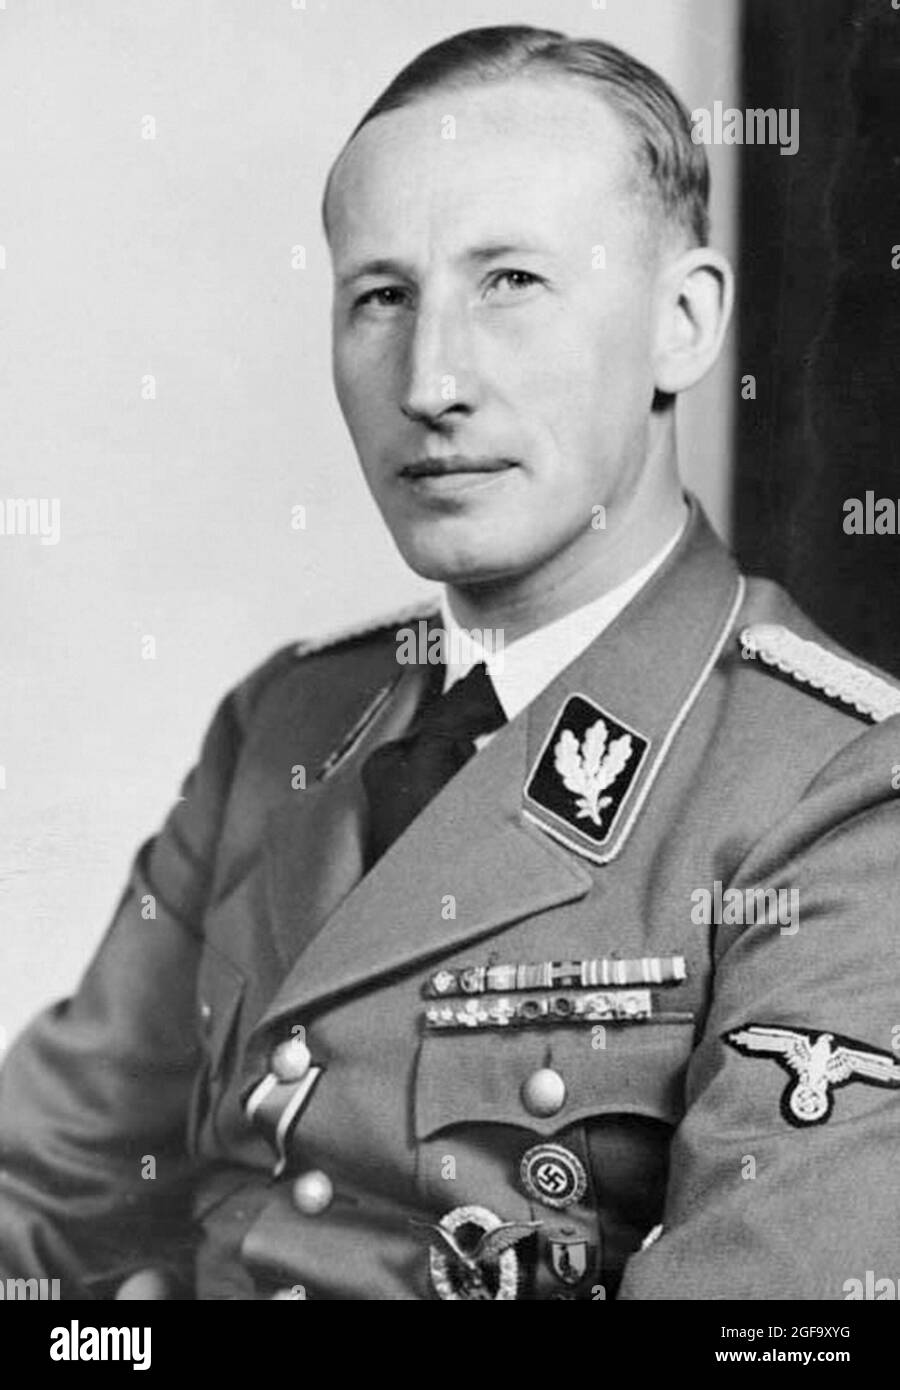 Un ritratto del leader nazista e delle SS Reinhard Heydrich. Era capo della Gestapo, Sicherheitsdienst (SD) e della sede della sicurezza del Reich (Reichssicherheitshauptamt o RSHA) ed è considerato un architetto capo dell'olocausto. Fu assassinato nel 1942. Credit: Bundesarchiv tedesco Foto Stock